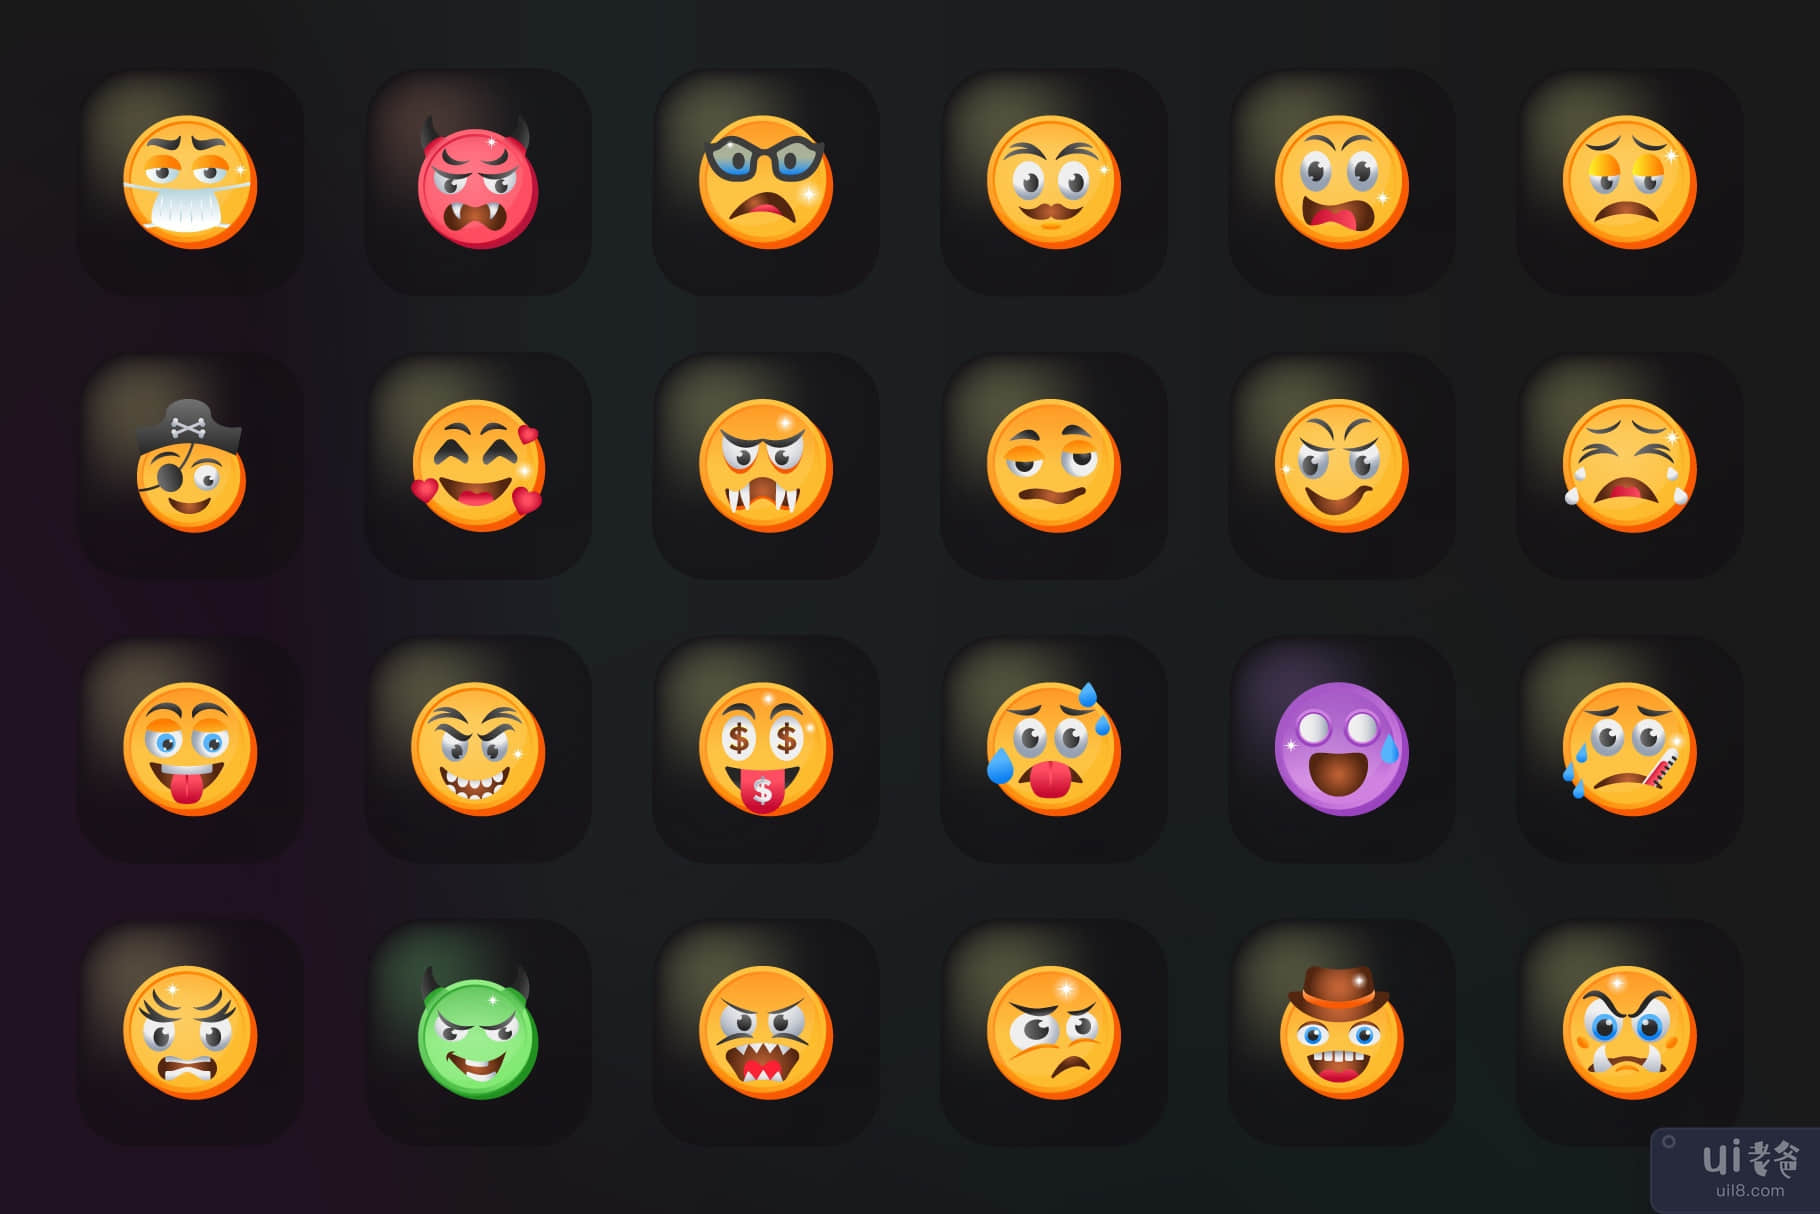 50 个表情符号图标-平面矢量(50 Emojis Icons - Flat Vectors)插图5